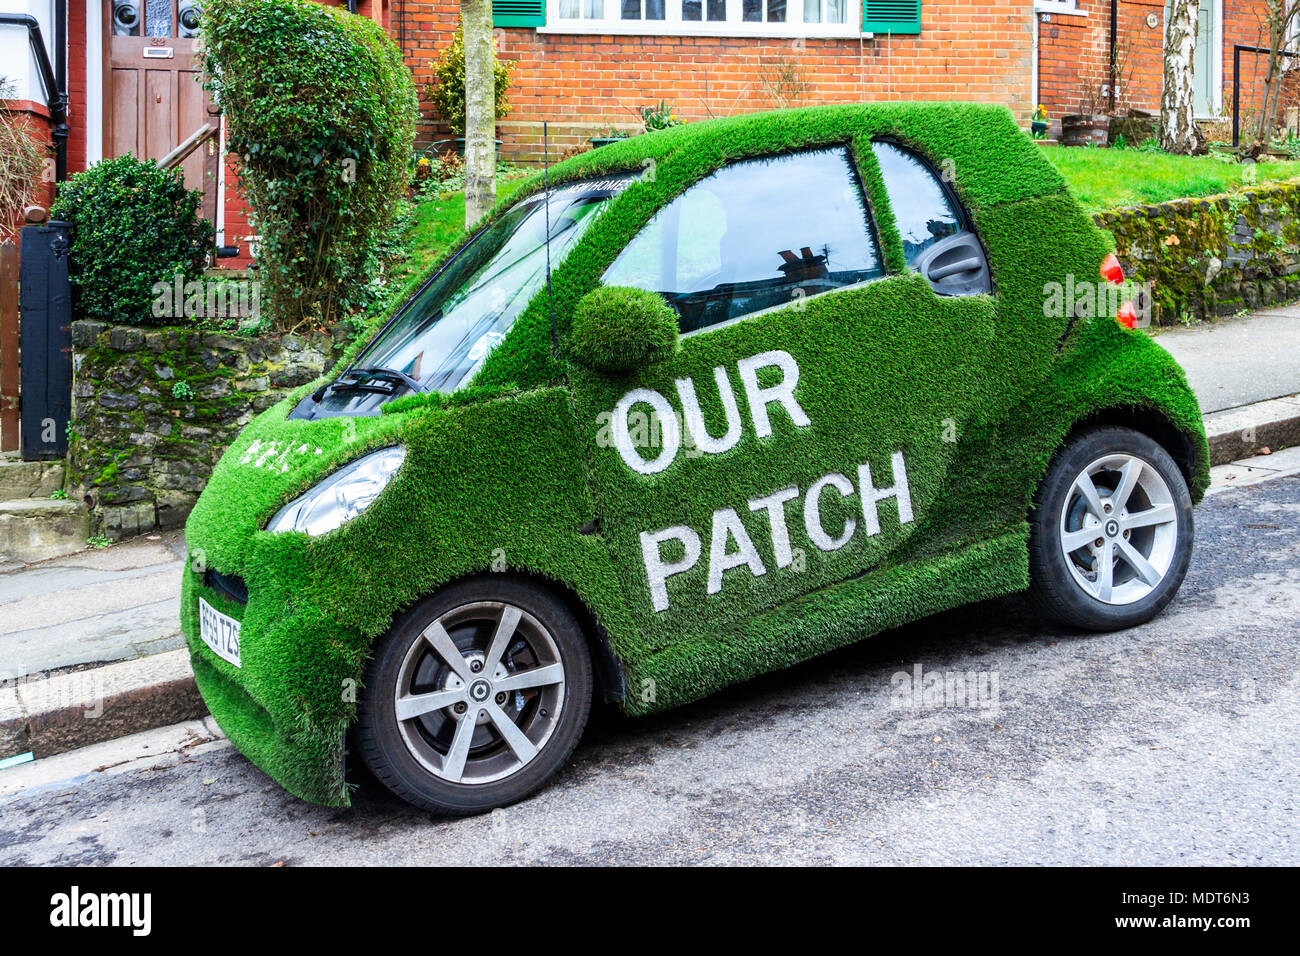 Greene & Co agents immobiliers Smart car enveloppé dans le vert gazon artificiel, avec le slogan : "Notre Patch', Muswell Hill, London, UK Banque D'Images